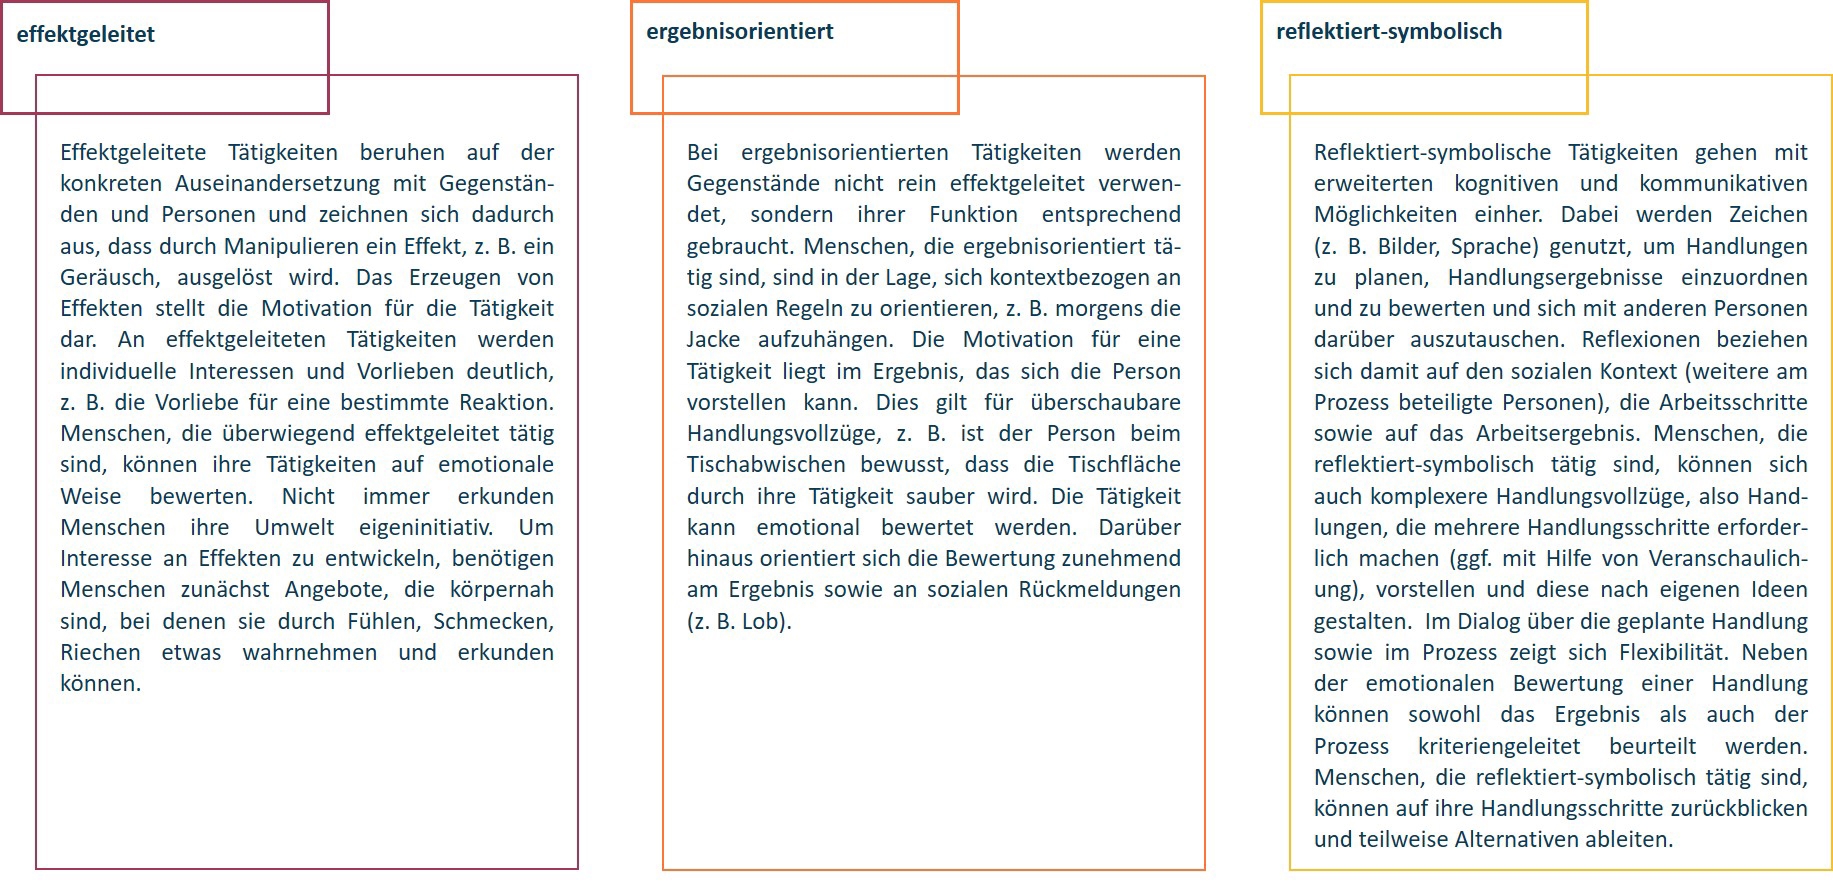 Pädagogisches Diagramm mit den drei Kompetenzkategorien Wirksamkeitsorientierte, Ergebnisorientierte und Reflektierend-Symbolische Kompetenzen, jeweils mit Schlüsselpunkten im deutschen Text beschrieben.